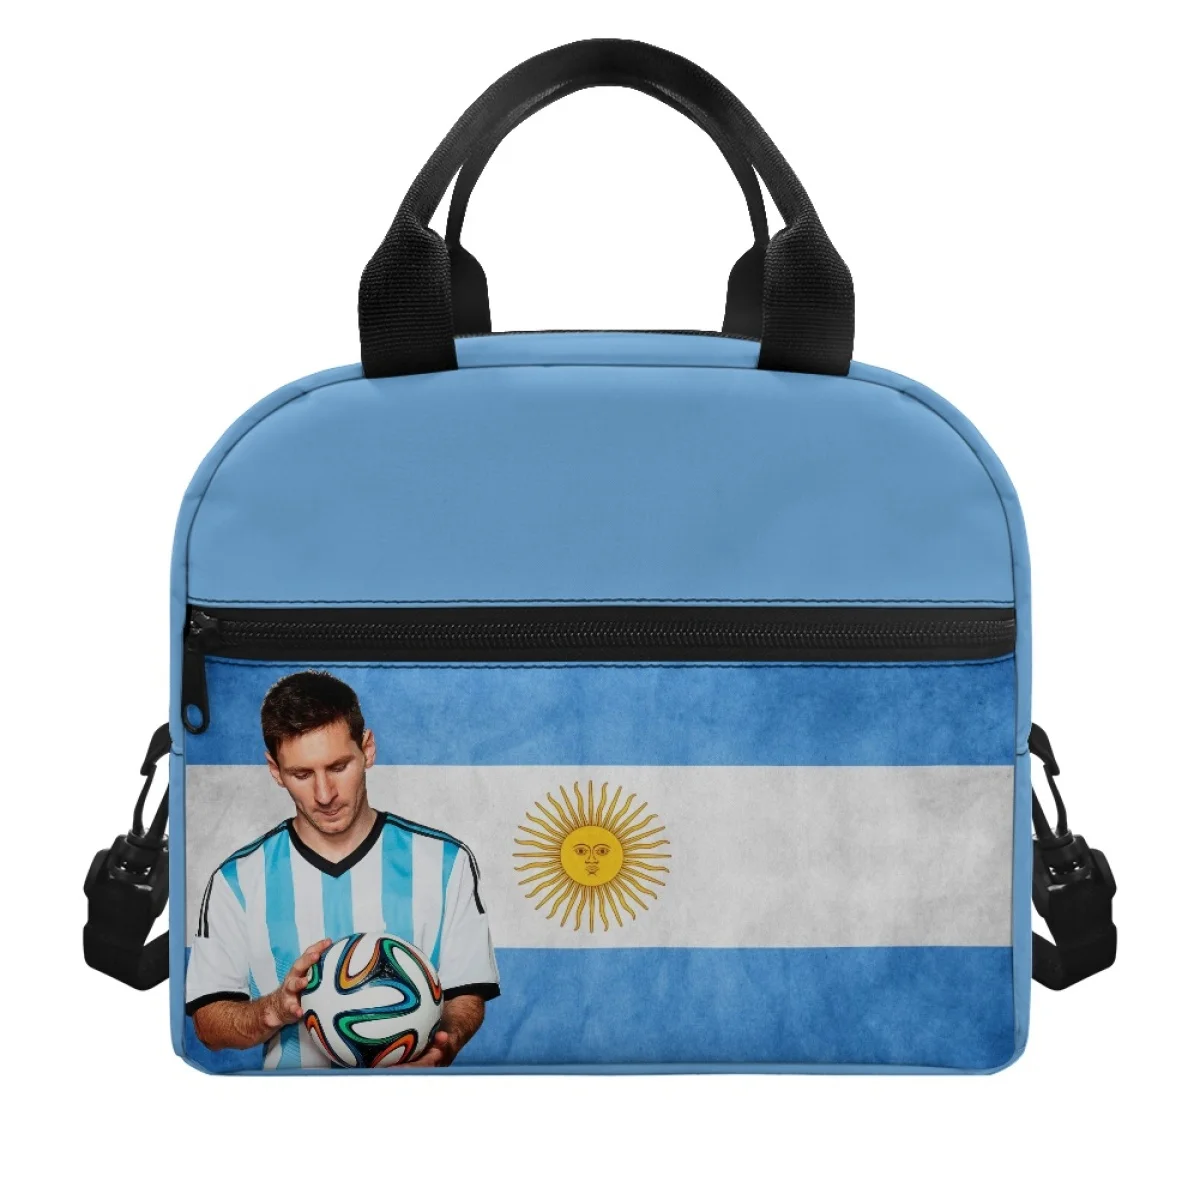 Рисунок футболиста Месси Аргентина Женская вместительная изолированная сумка для ланча Дорожные студенческие сумки Ткань Нежная, не выцветает